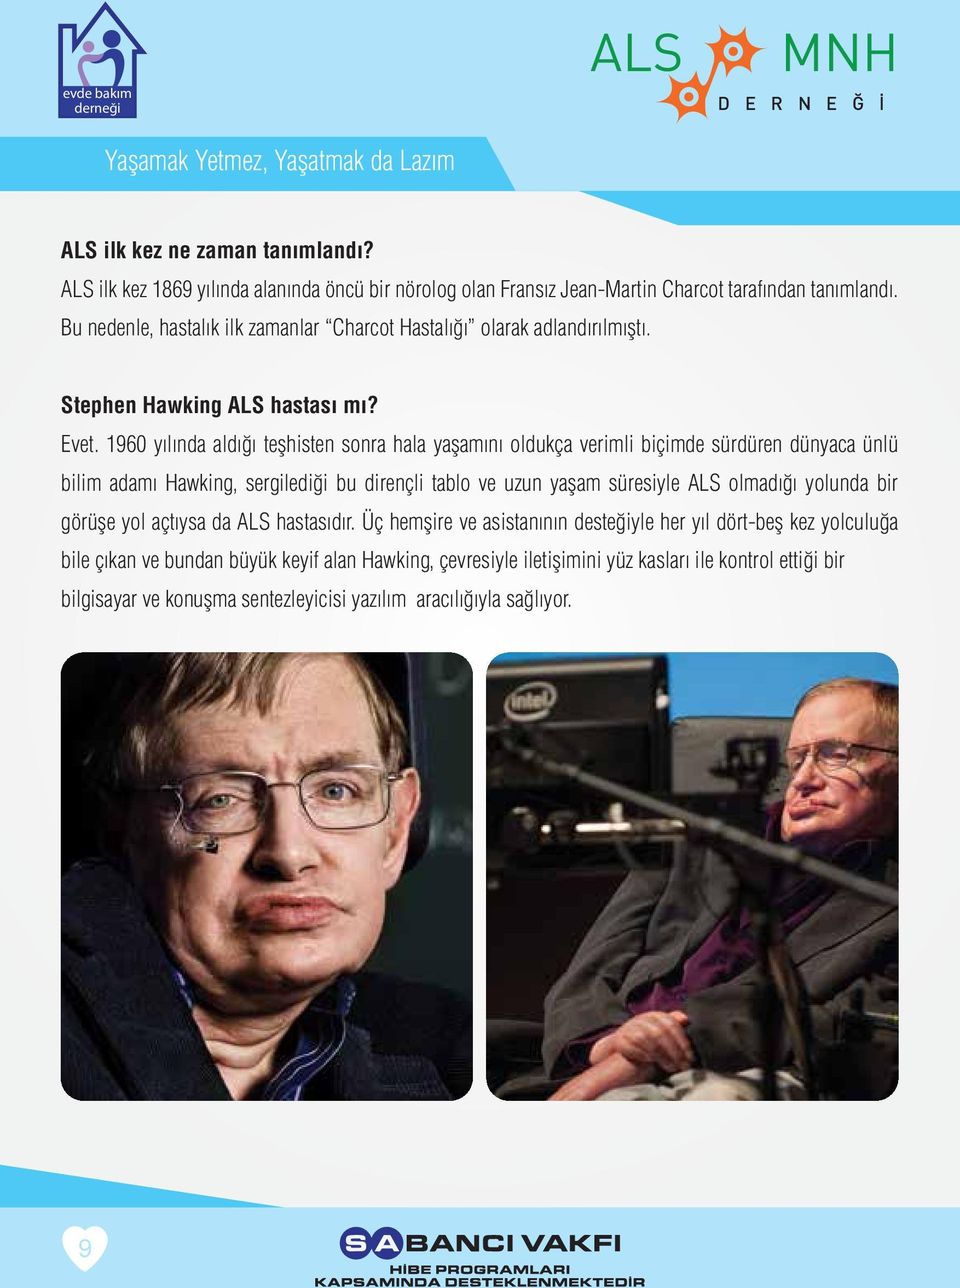 1960 yılında aldığı teşhisten sonra hala yaşamını oldukça verimli biçimde sürdüren dünyaca ünlü bilim adamı Hawking, sergilediği bu dirençli tablo ve uzun yaşam süresiyle ALS olmadığı